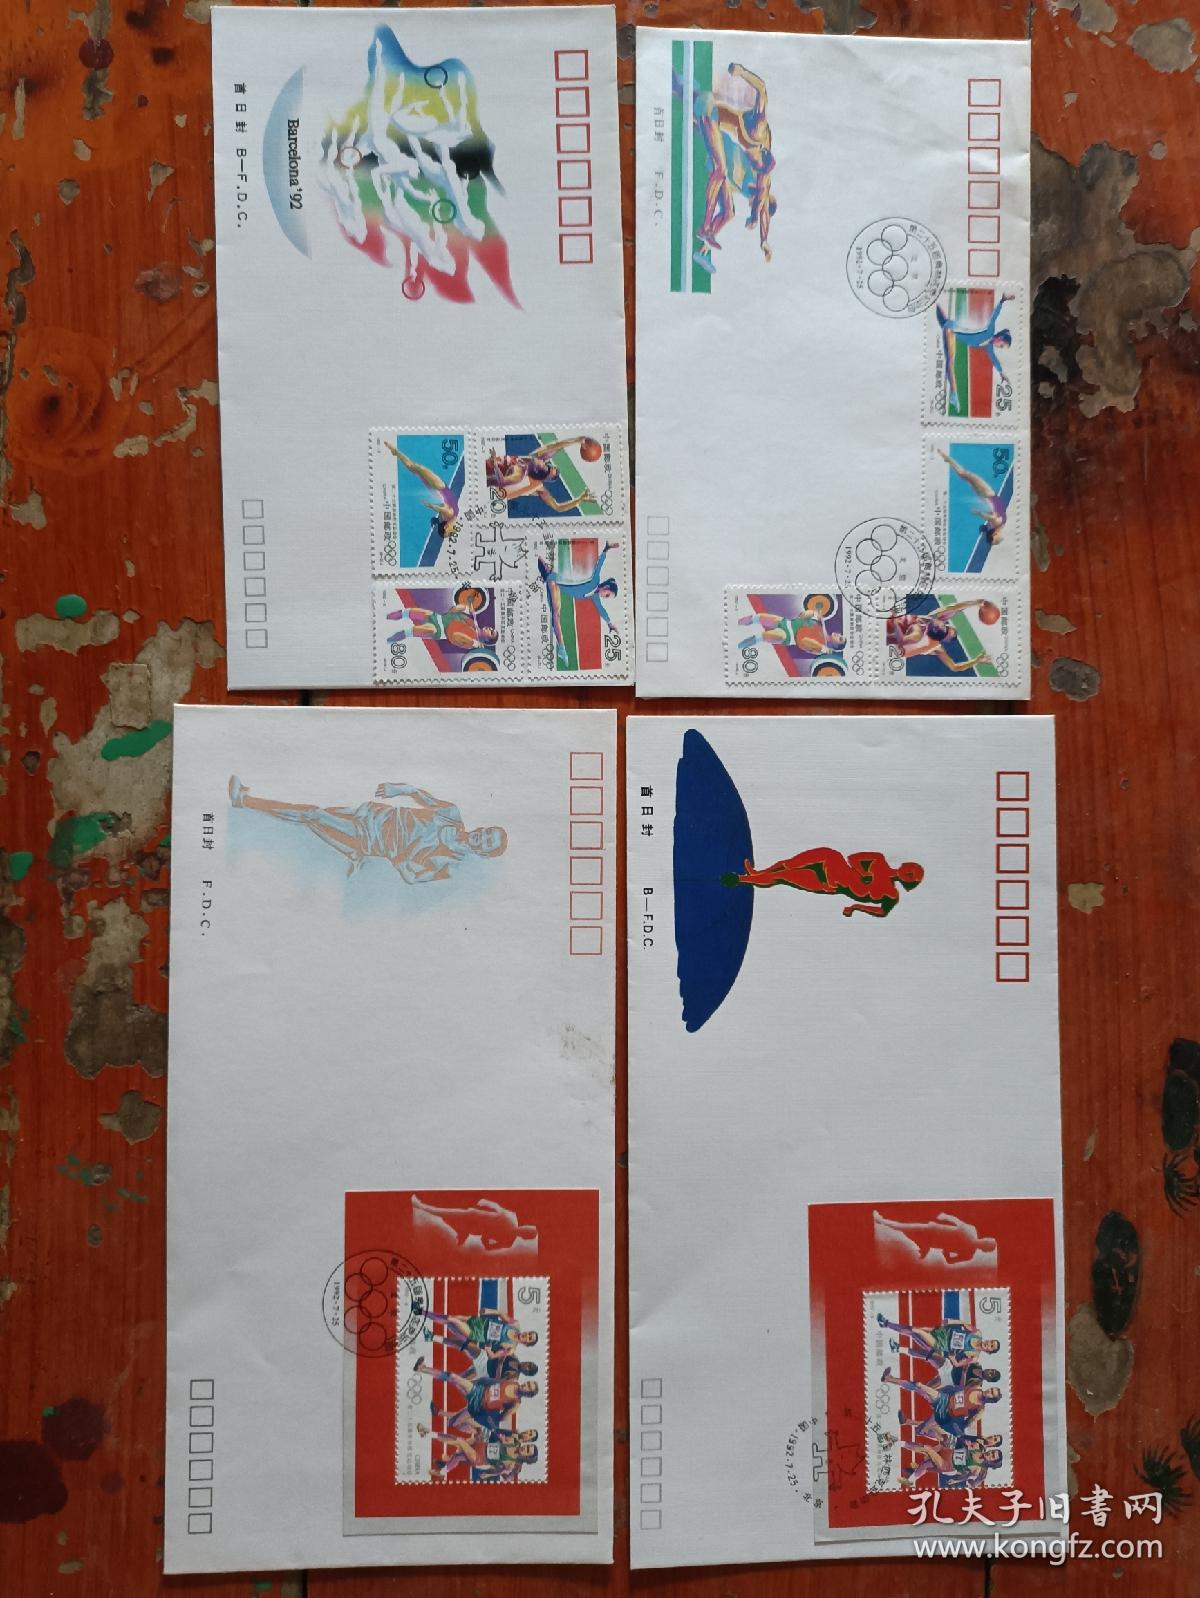 1992-8 第二十五届奥林匹克运动会 邮票 首日封 明信片